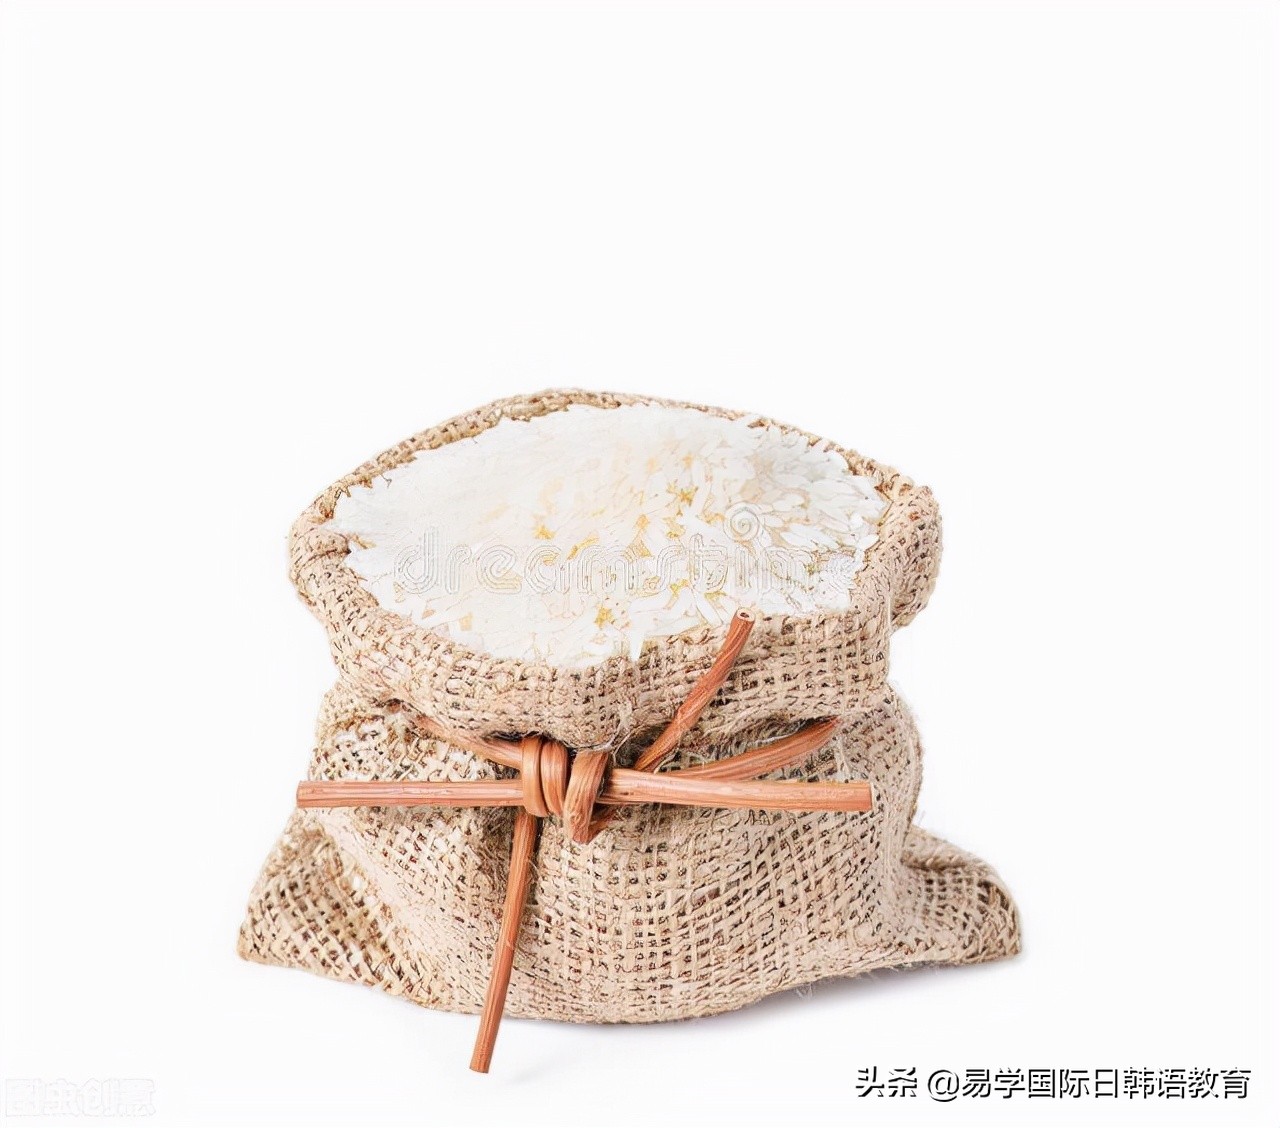 那些关于“一袋米”的日语 | 西安日语培训